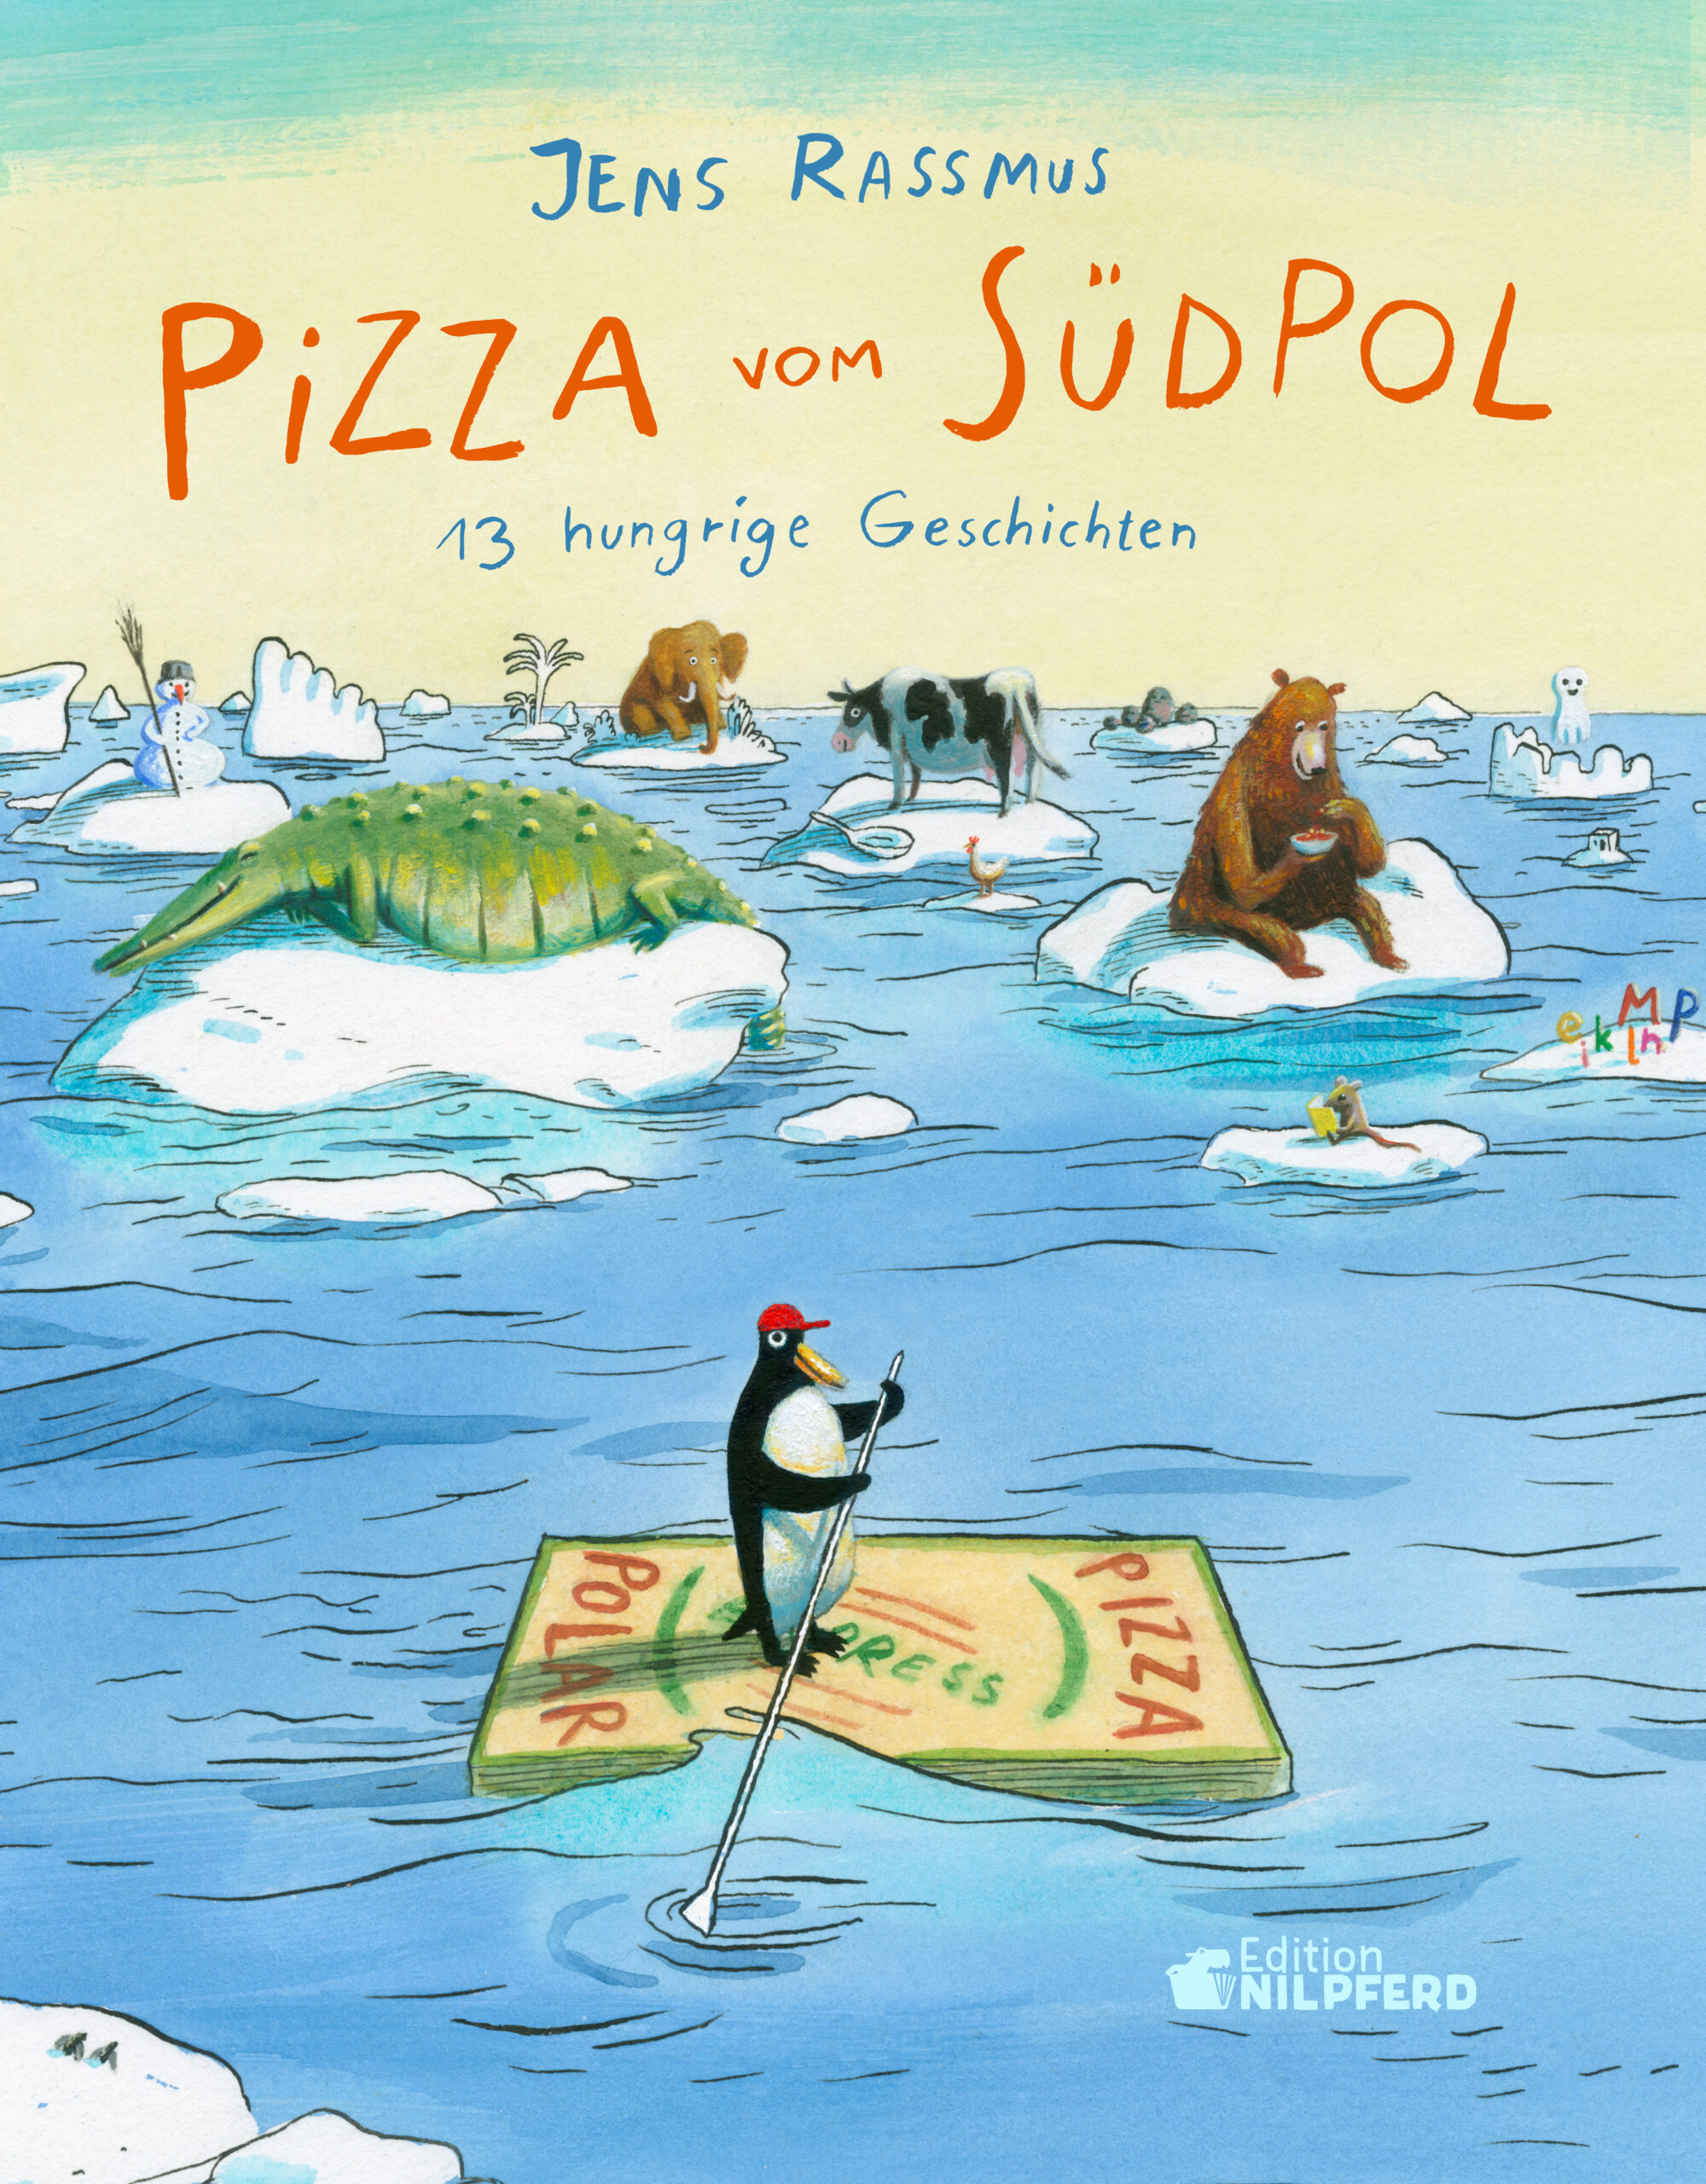 Buchcover "Pizza vom Südpol", Edition Nilpferd 